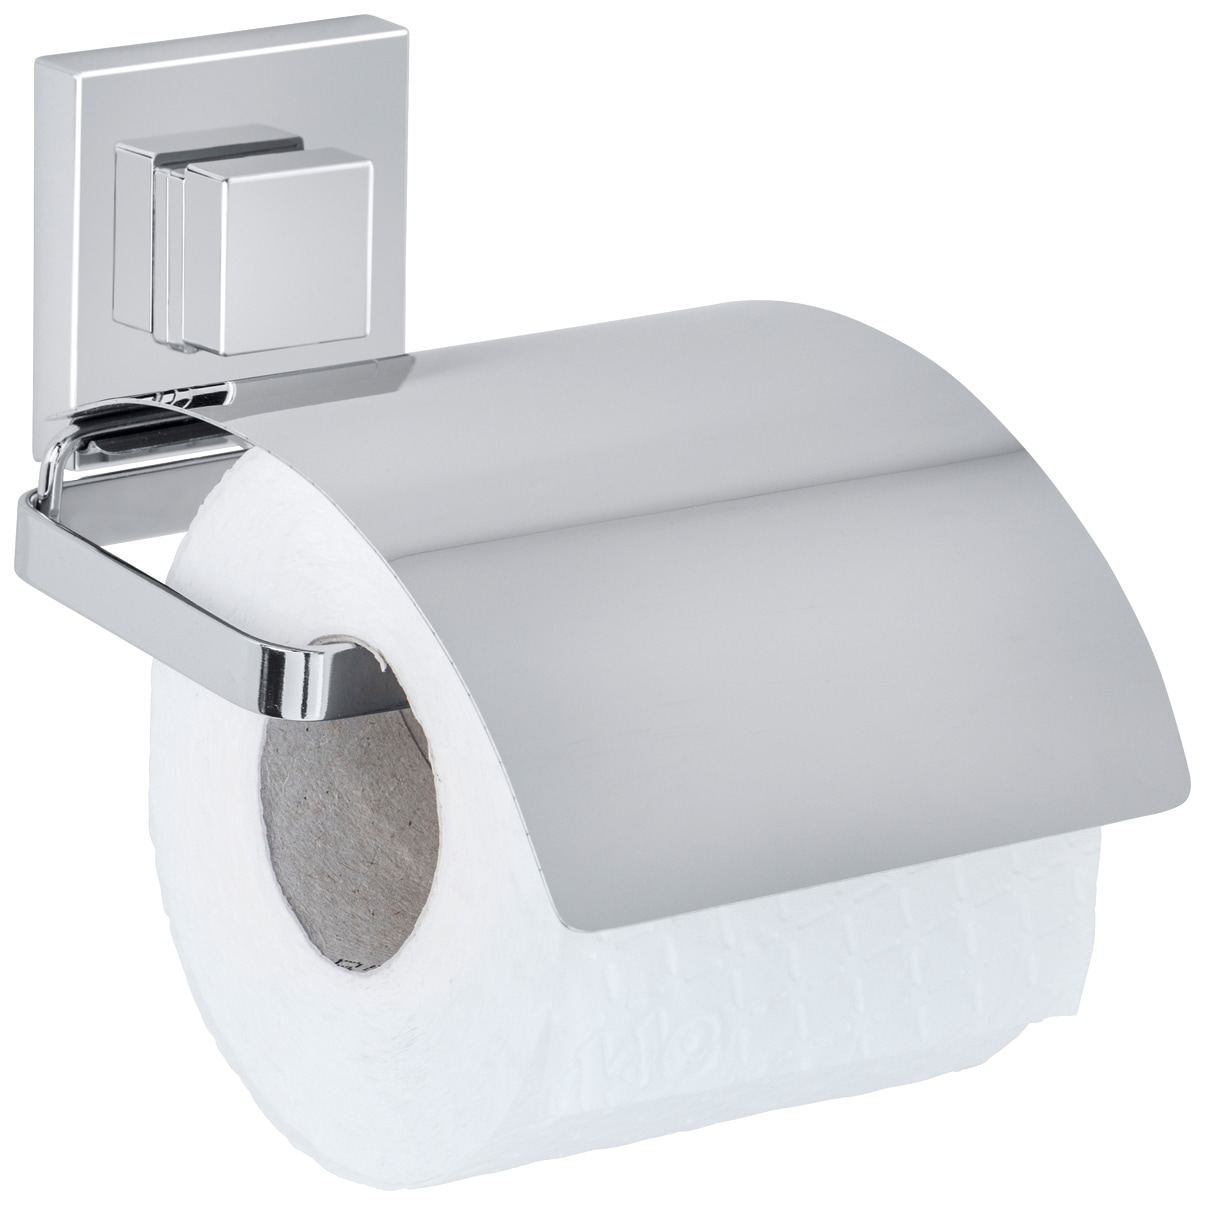 Toilettenpapierhalter kaufen preiswert